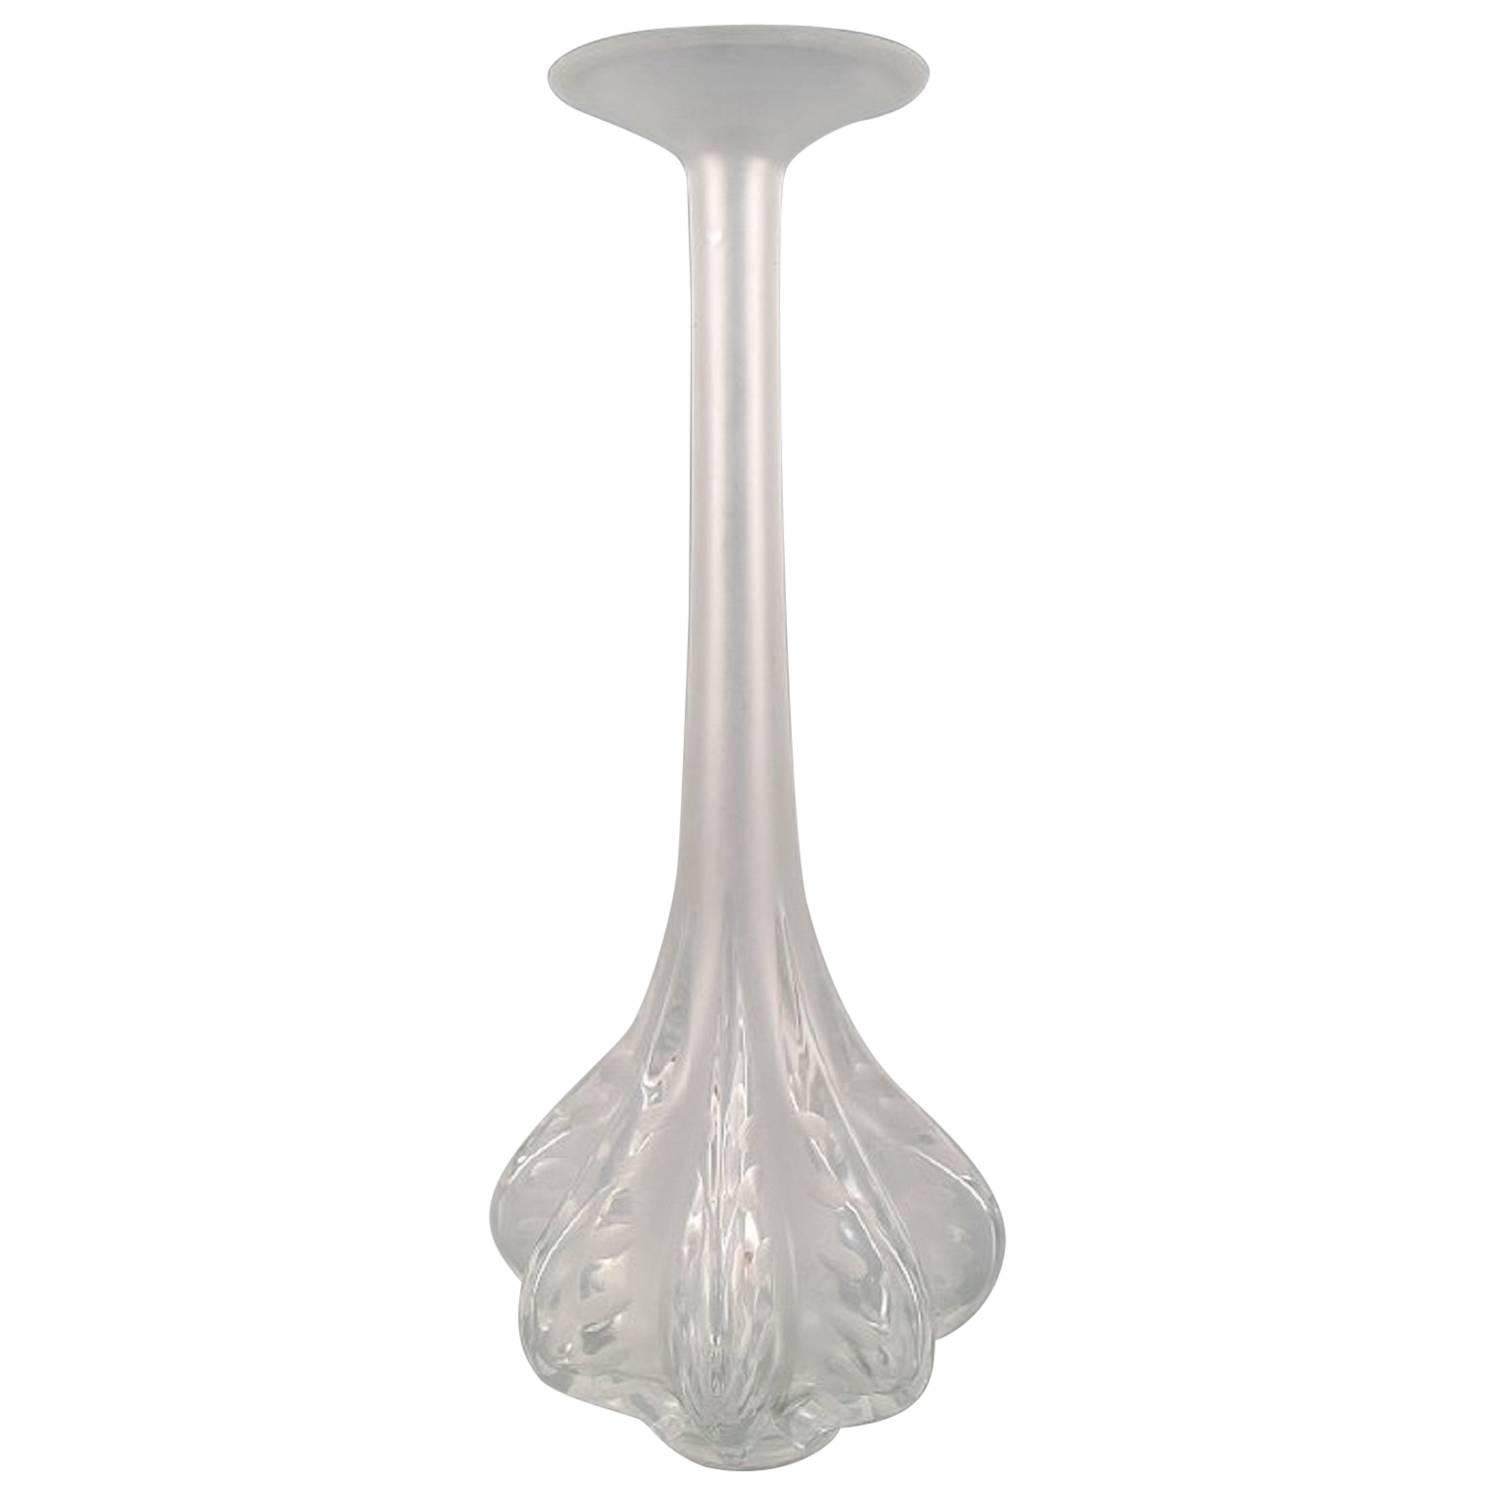 Large Art Deco Lalique Art Glass Vase